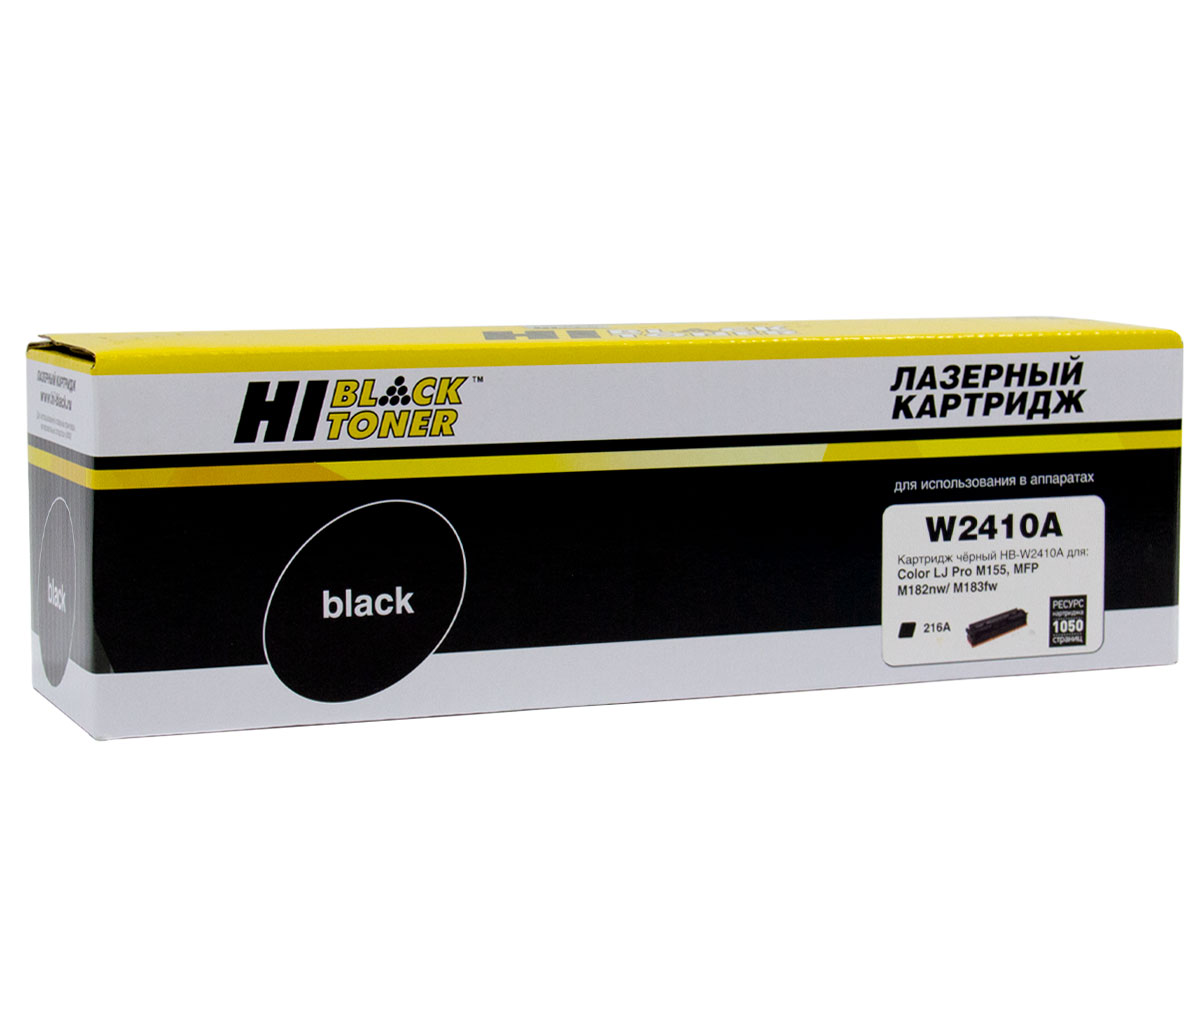 Картридж Hi-Black (HB-W2410A) для HP CLJ Pro M155a/MFPM182n/M183fw, Bk, 1,05K